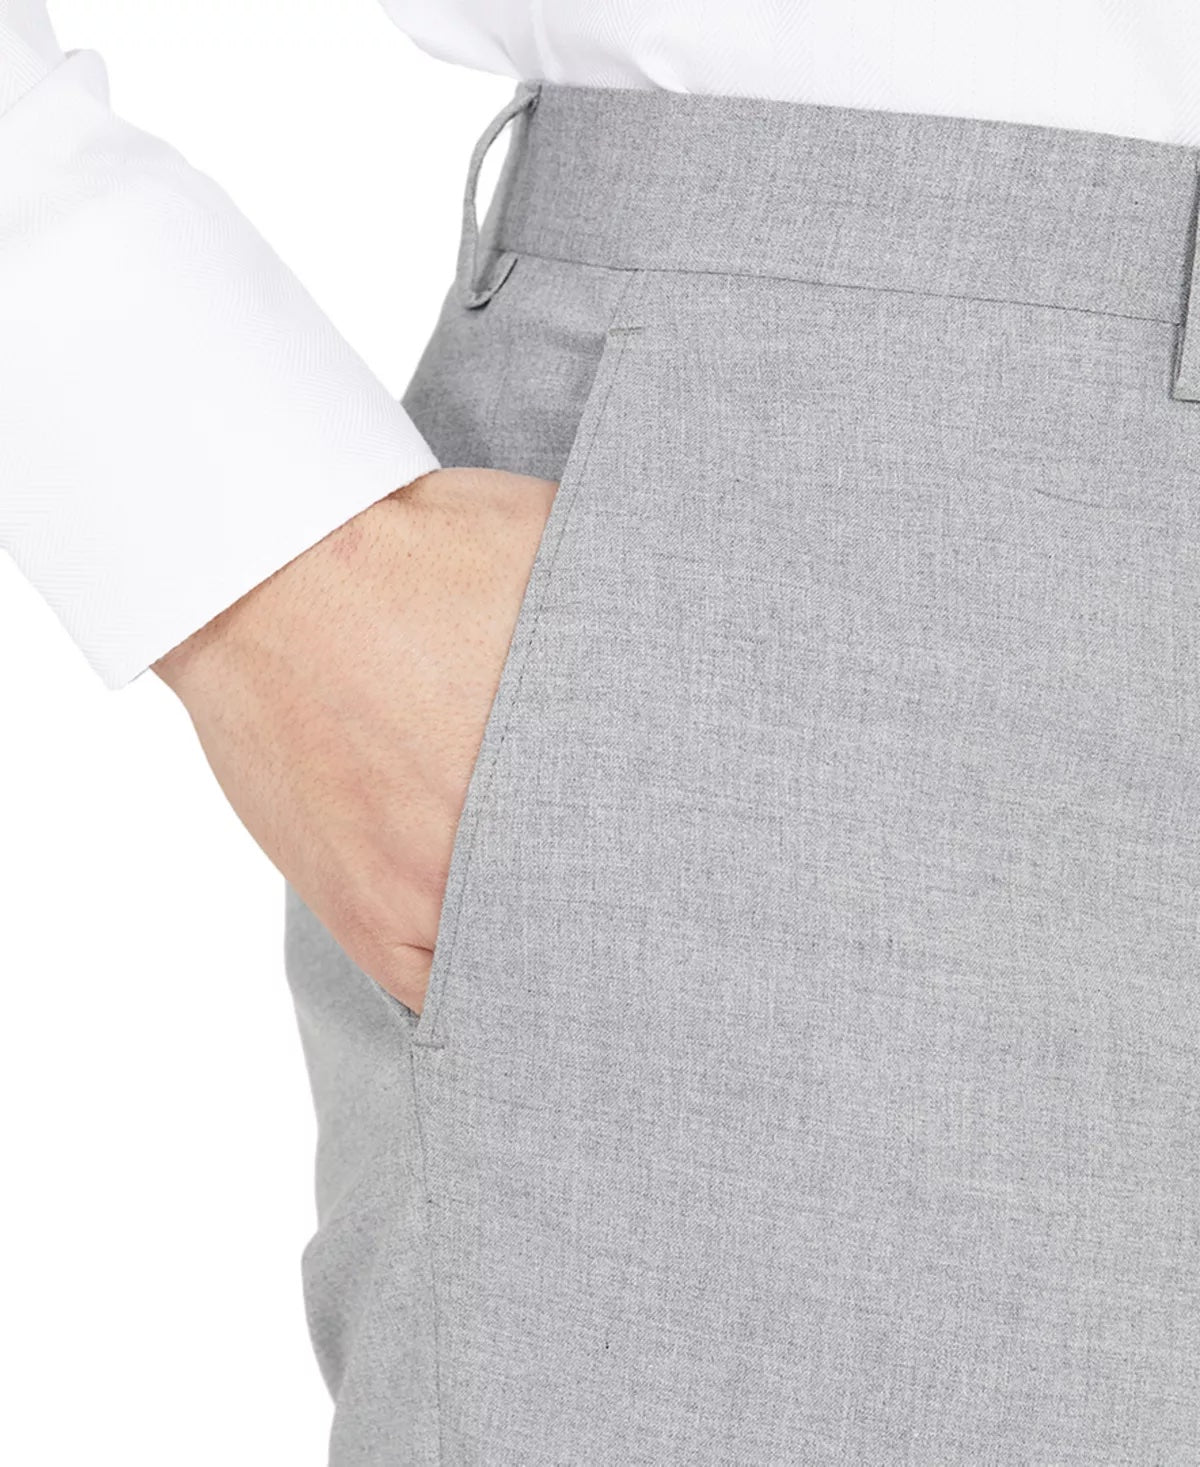 DKNY Men's Dress Pants Light Grey 38 x 29 Modern-Fit Light Gray Stretch